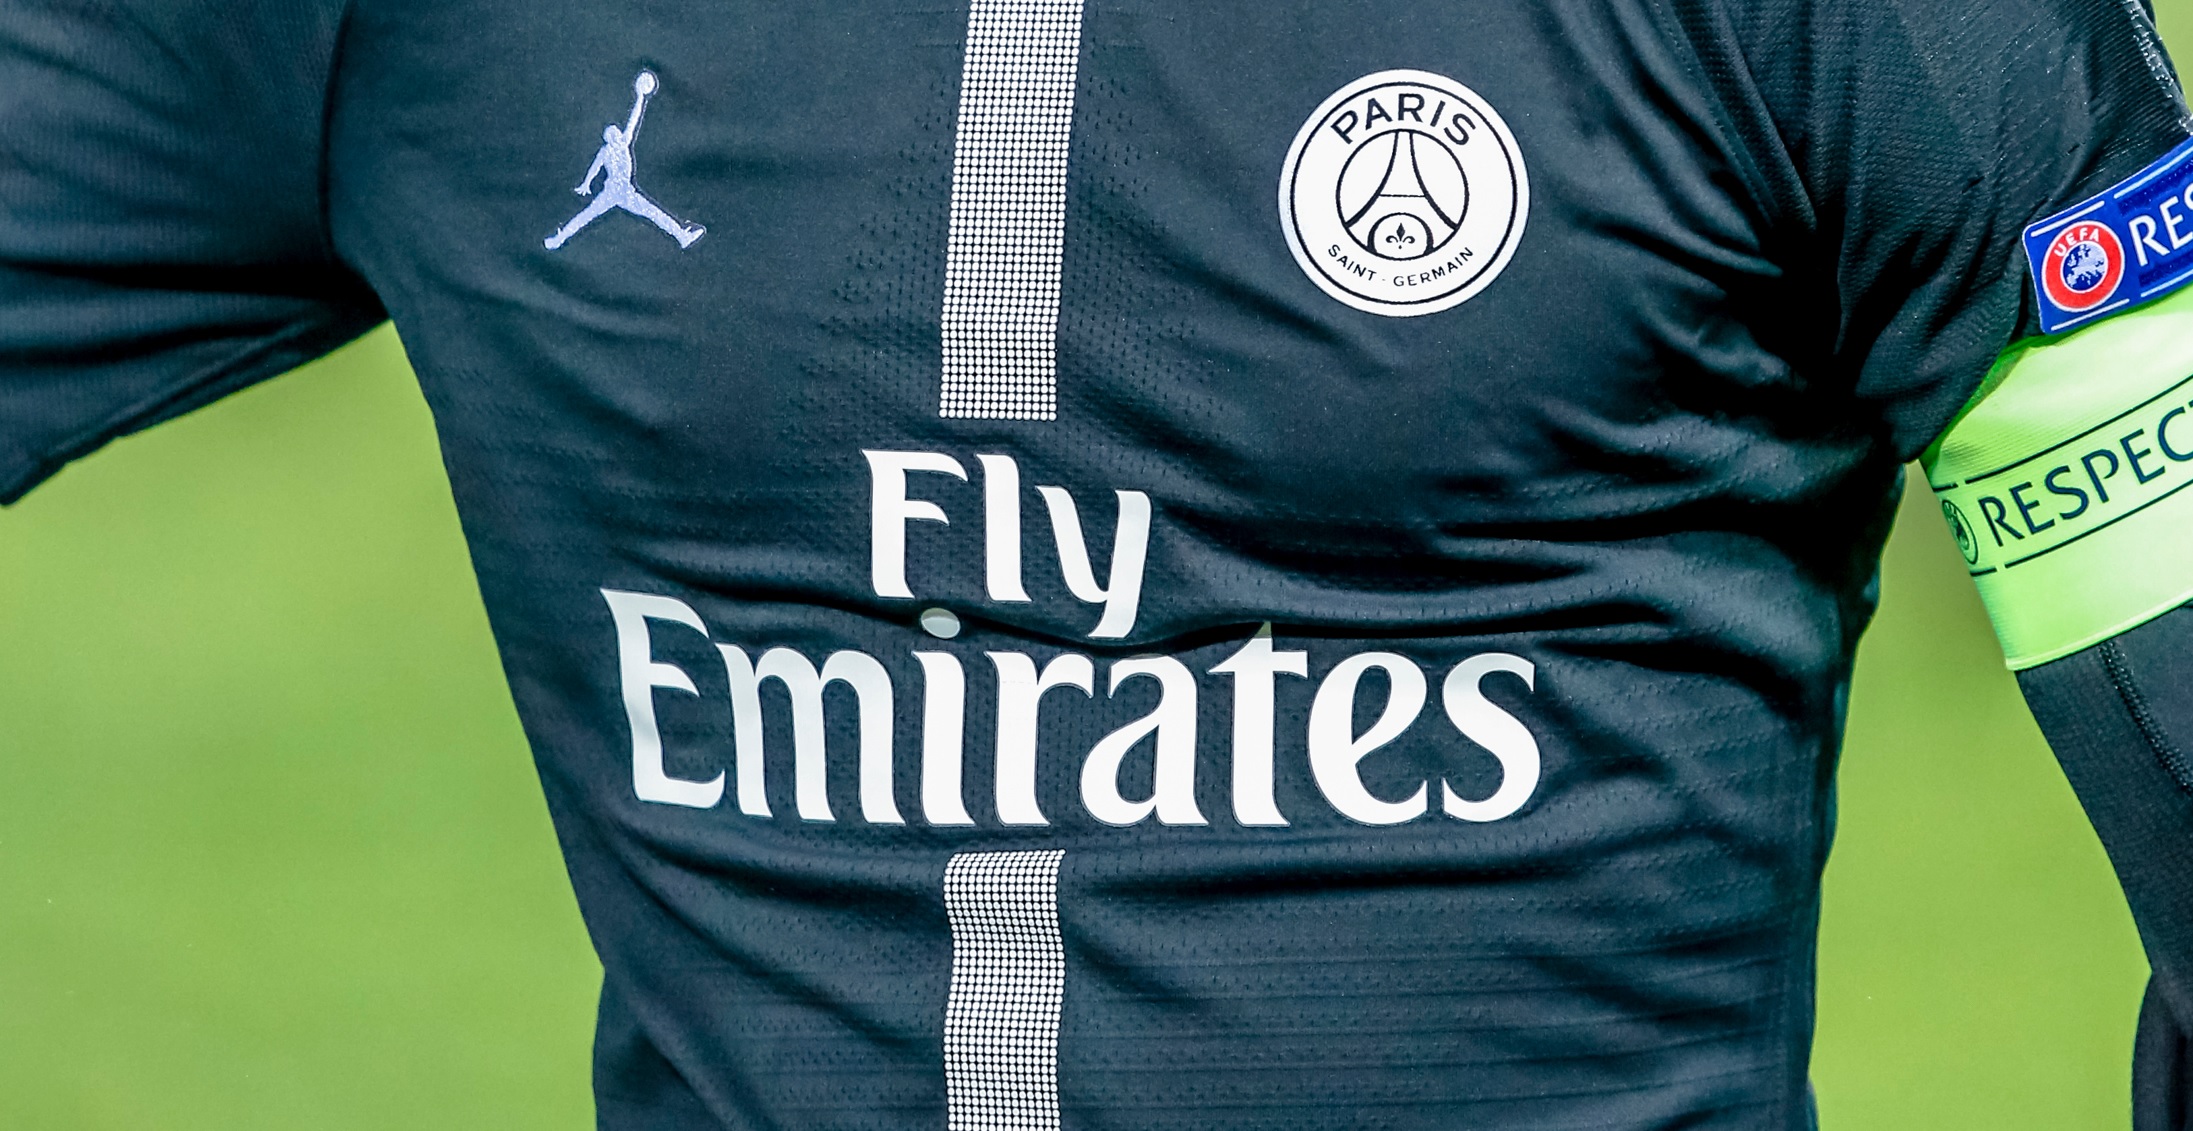 Sponsoring maillot : un dossier urgent à conclure pour le PSG